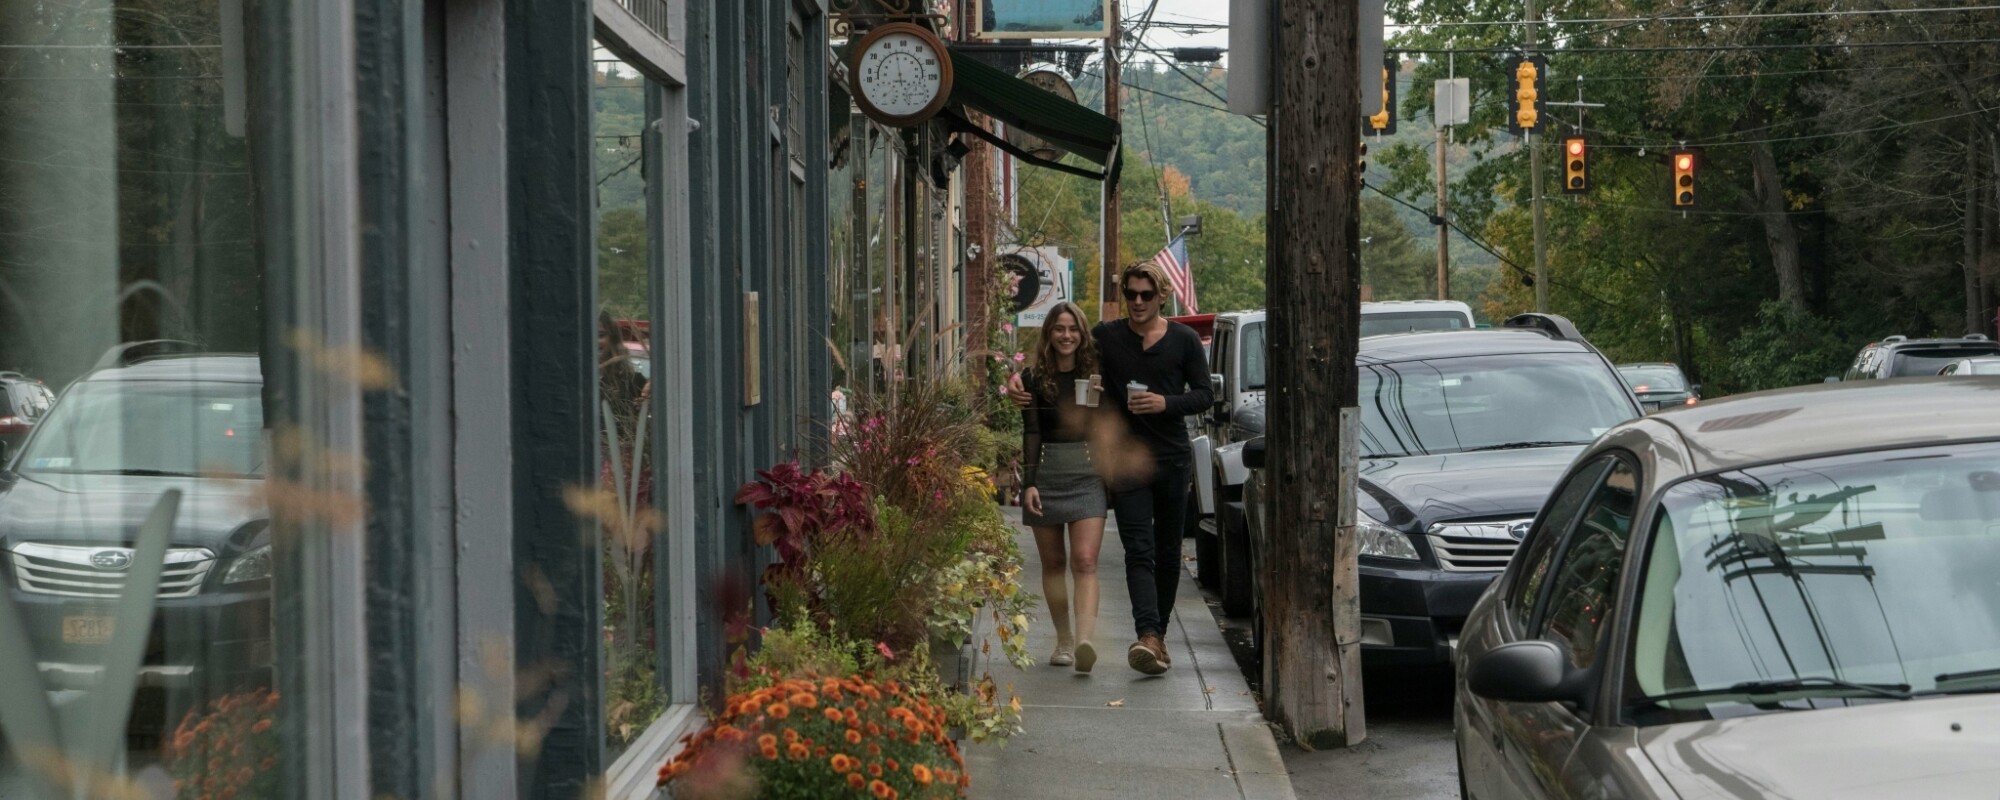 Two people walking down the sidewalk in Narrowsburg, New York